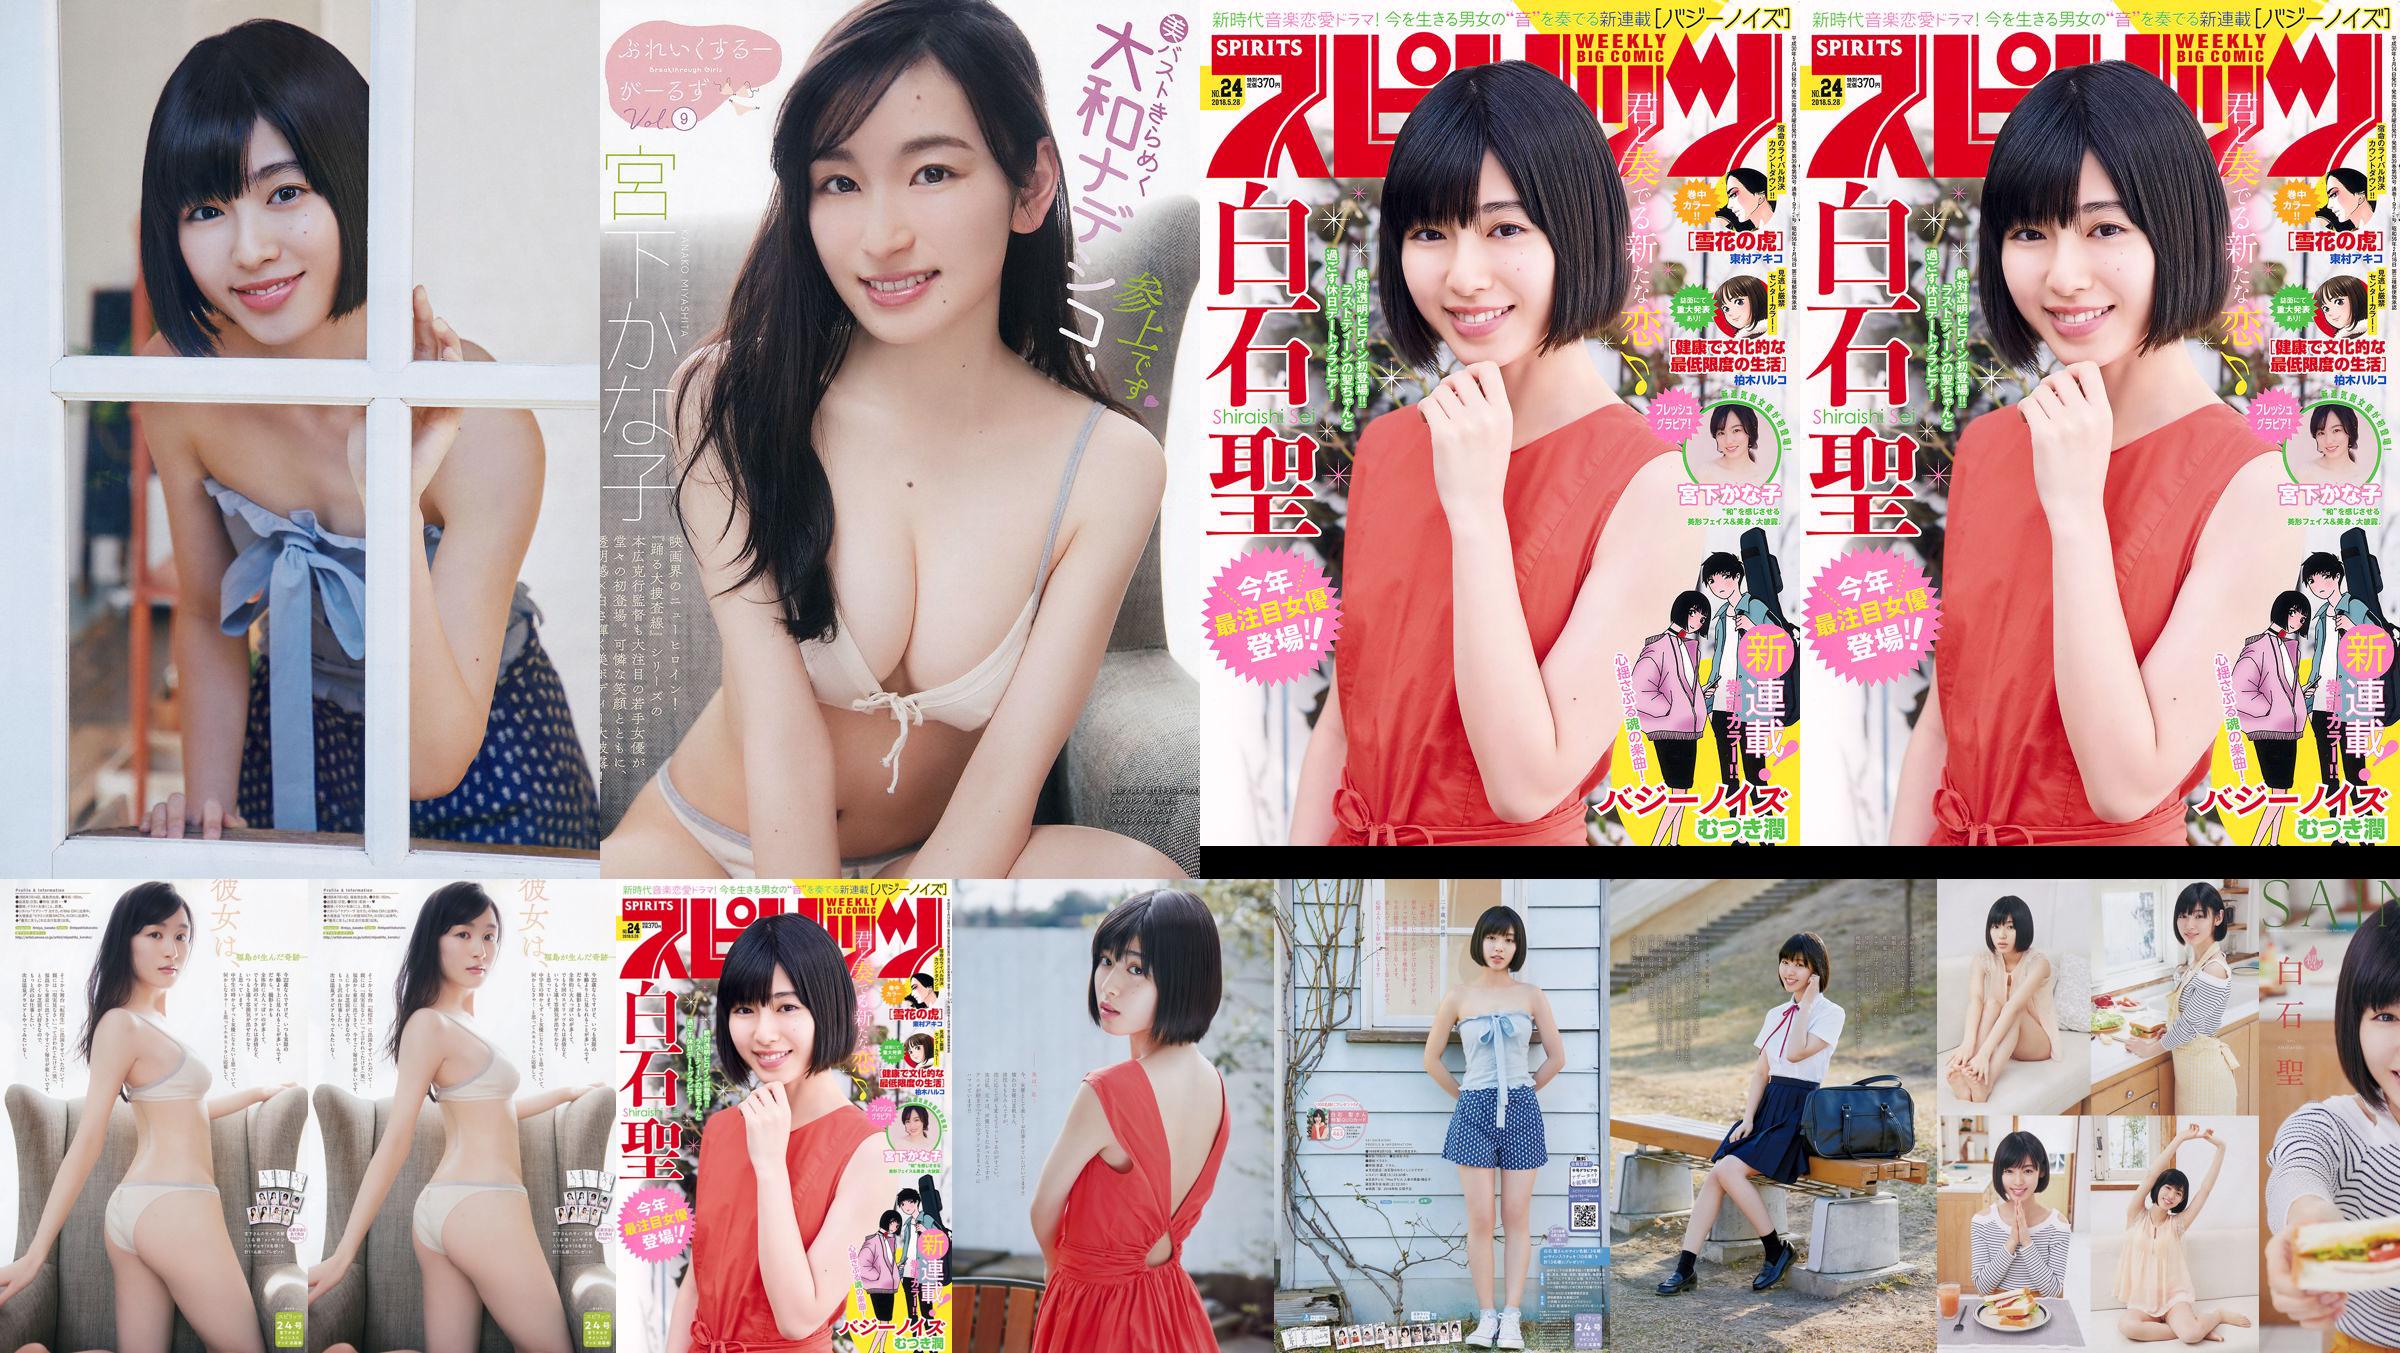 Yuria Kizaki Nana Okada AKB48 Under Girls [Wekelijkse Young Jump] 2015 No.36-37 Foto No.740616 Pagina 1